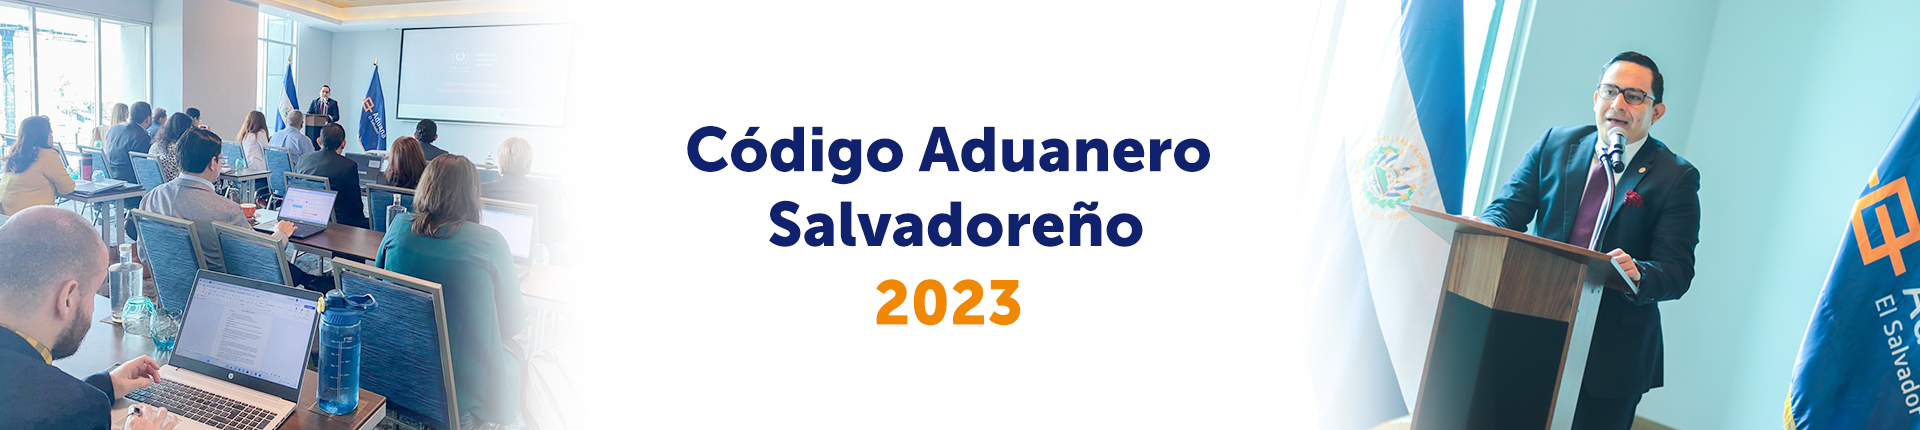 slide 1 /wp-content/uploads/2023/05/CODIGO-ADUANERO-SALVADOREÑO.png